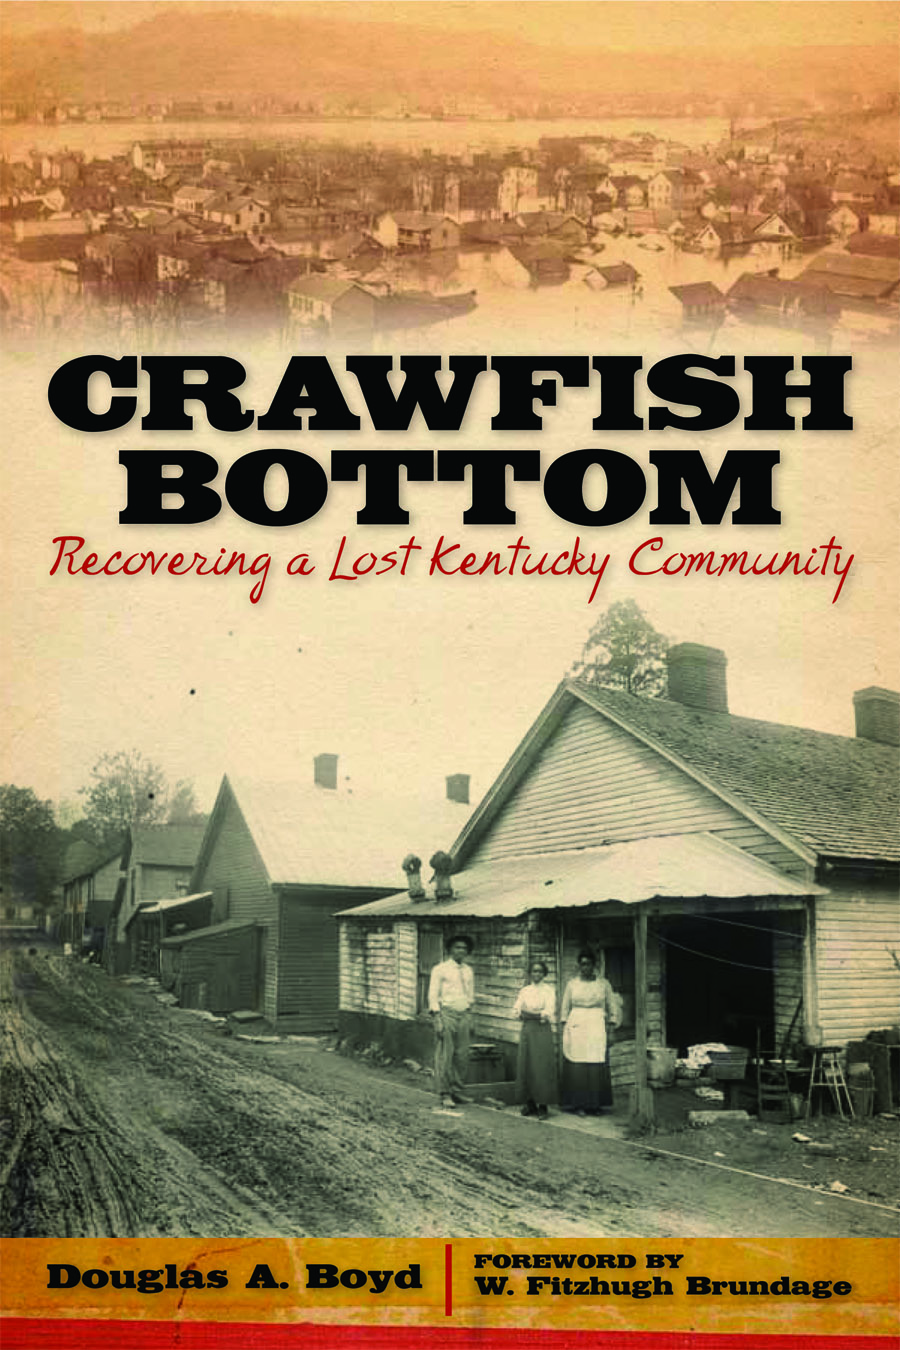 Cover, "Crawfish Bottom"